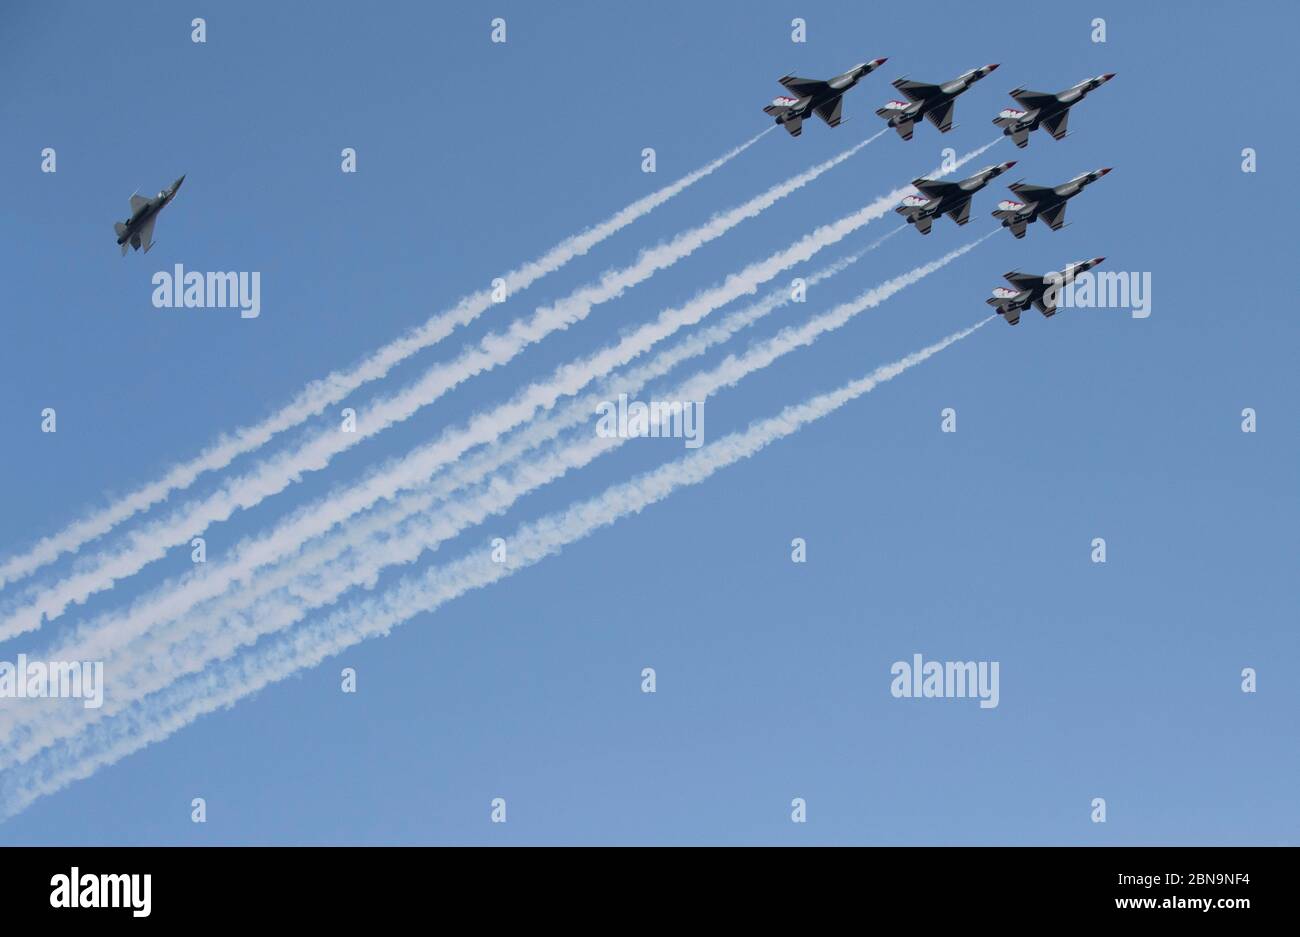 Gli Stati Uniti Air Force Thunderbirds volano in formazione sul centro di Austin per onorare i soccorritori, i medici, i membri dell'esercito e altri lavoratori essenziali che si occupano della crisi del coronavirus come parte della missione 'operation American strong' del Pentagono. Foto Stock